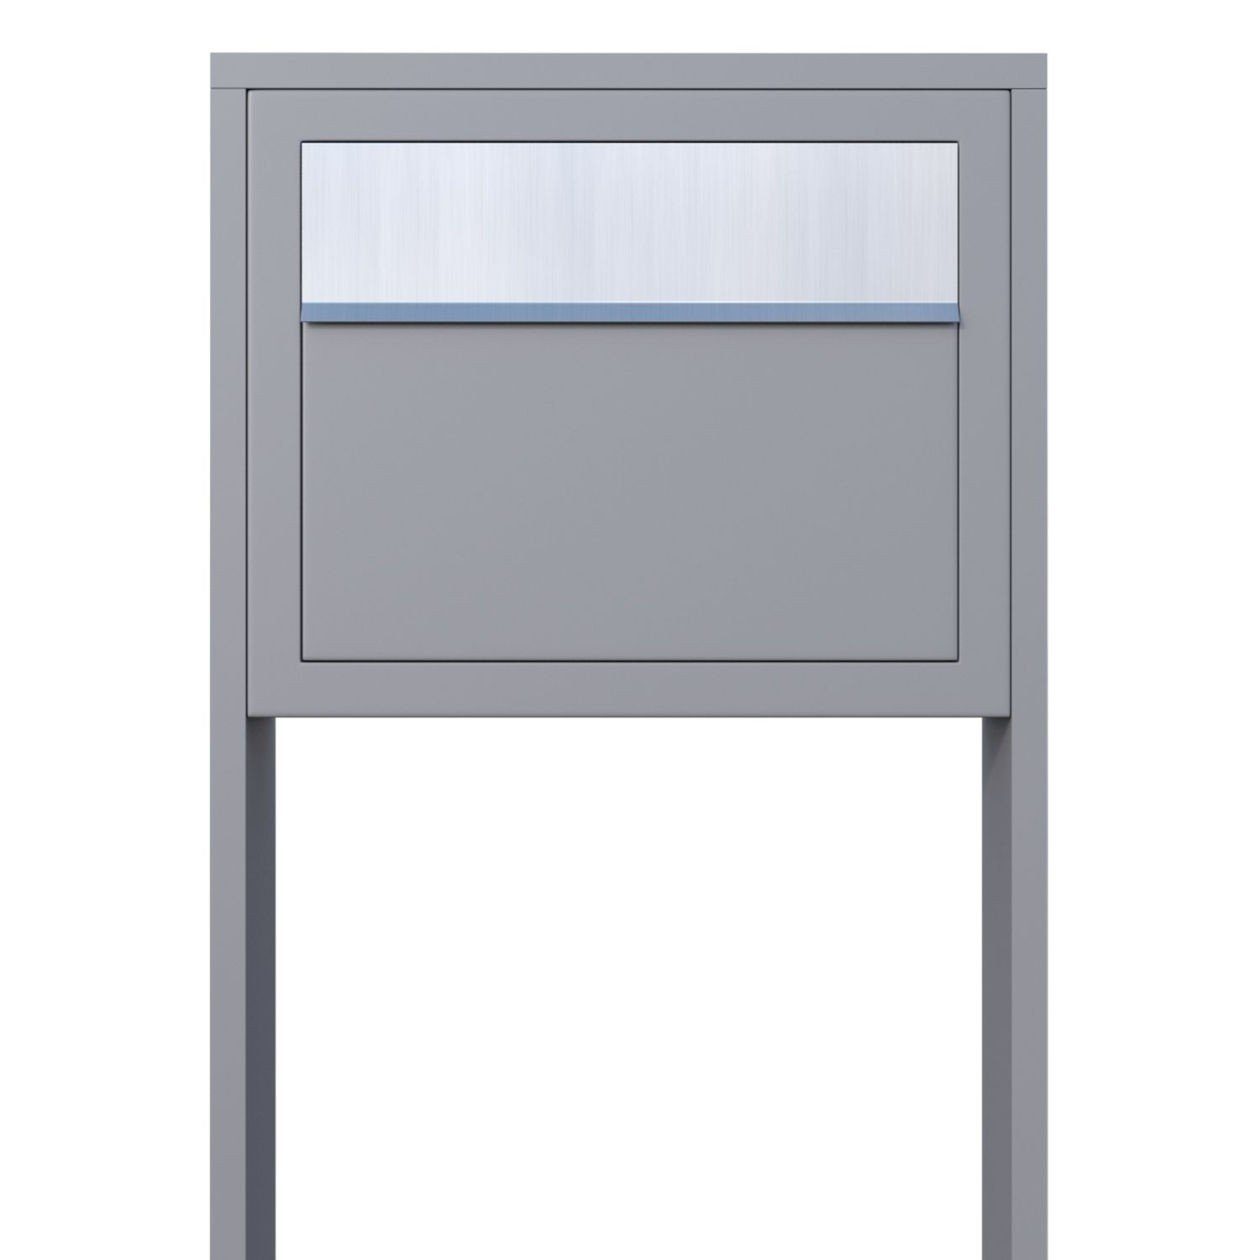 Bravios Briefkasten Standbriefkasten Elegance Grau mit Metallic Edels